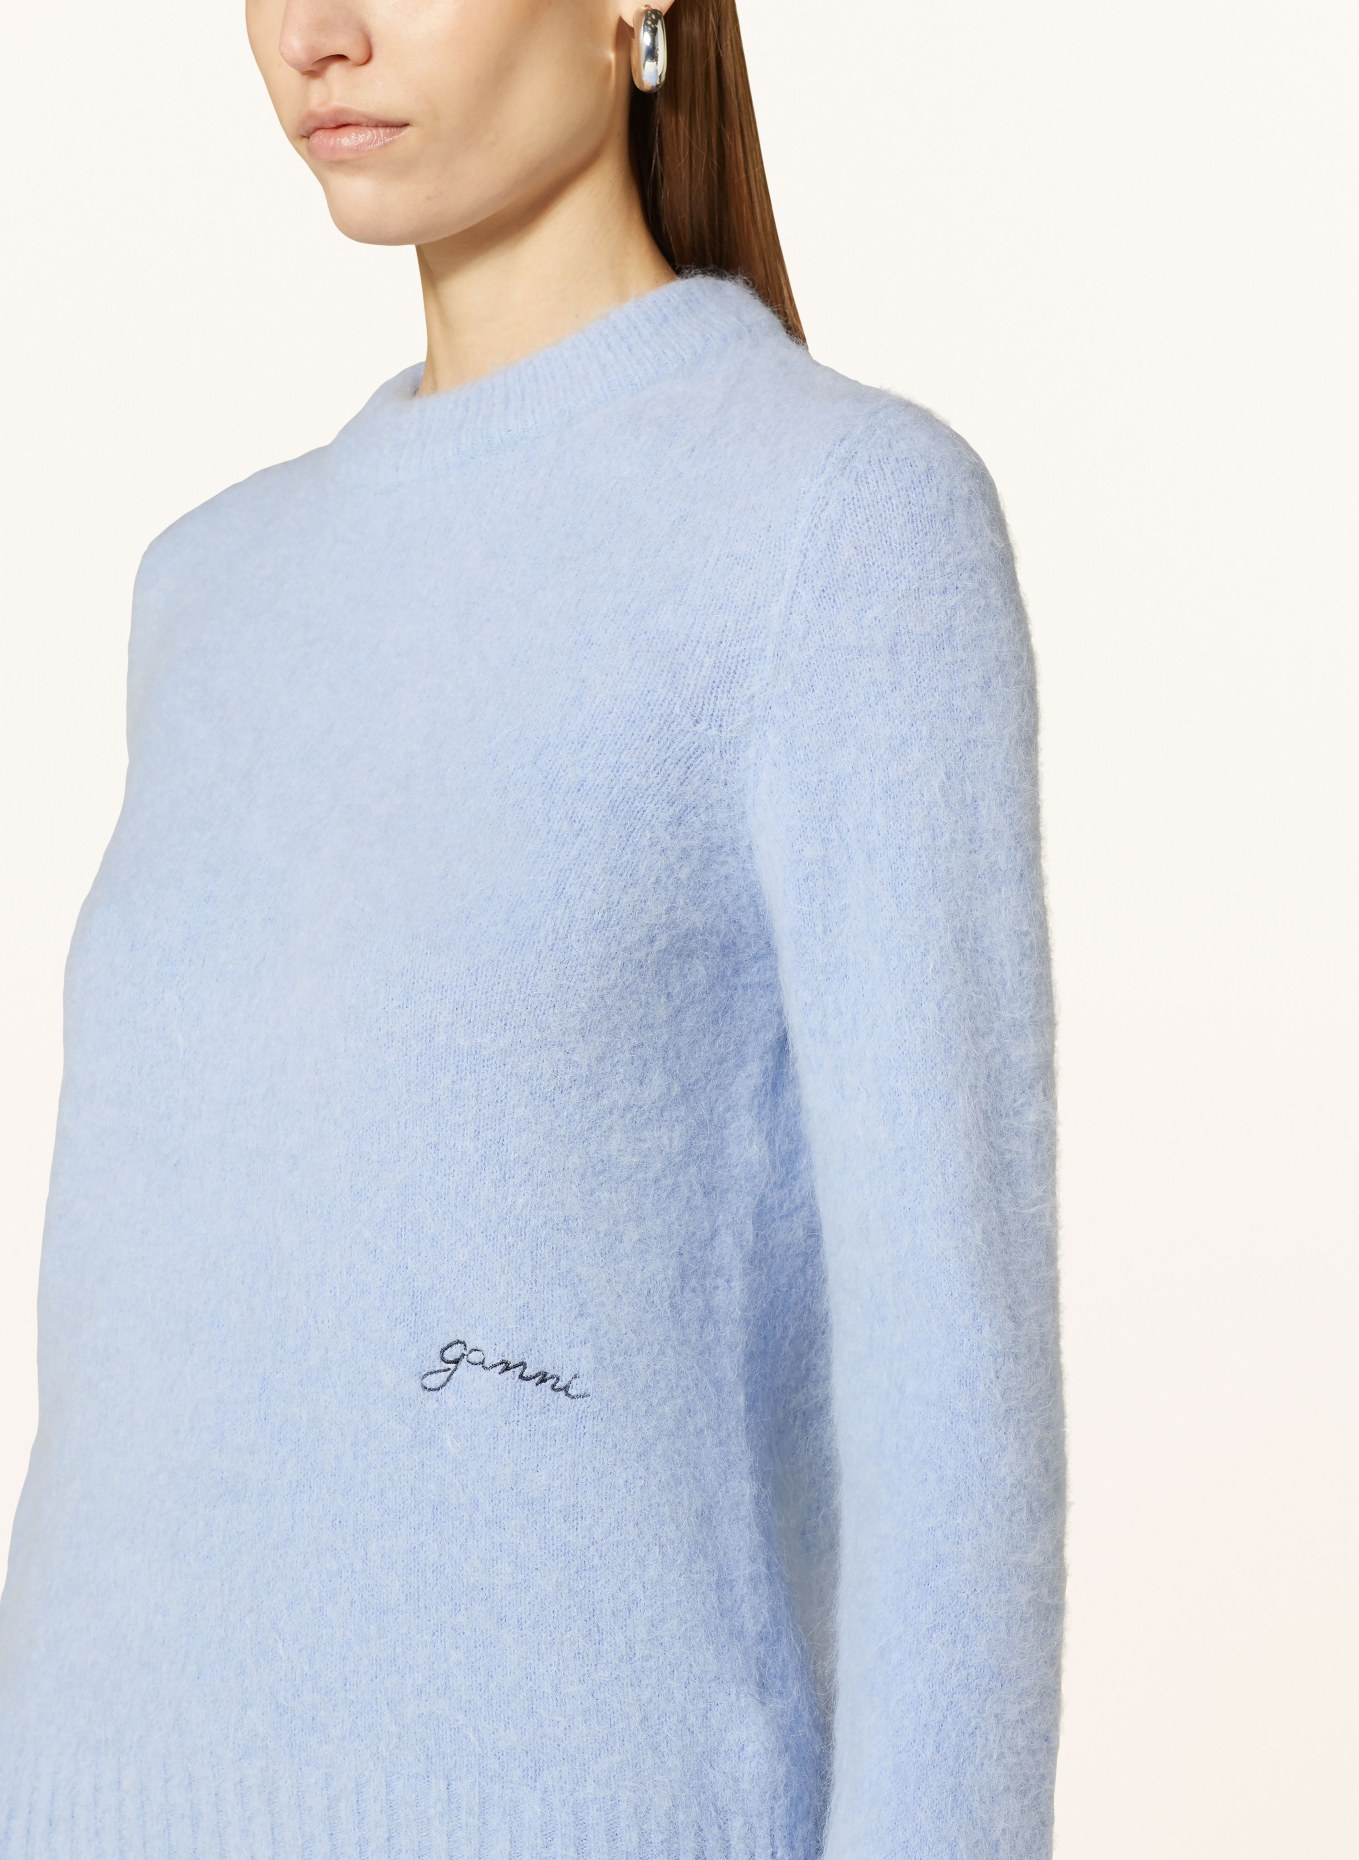 GANNI Sweater with alpaca, Color: LIGHT BLUE (Image 4)